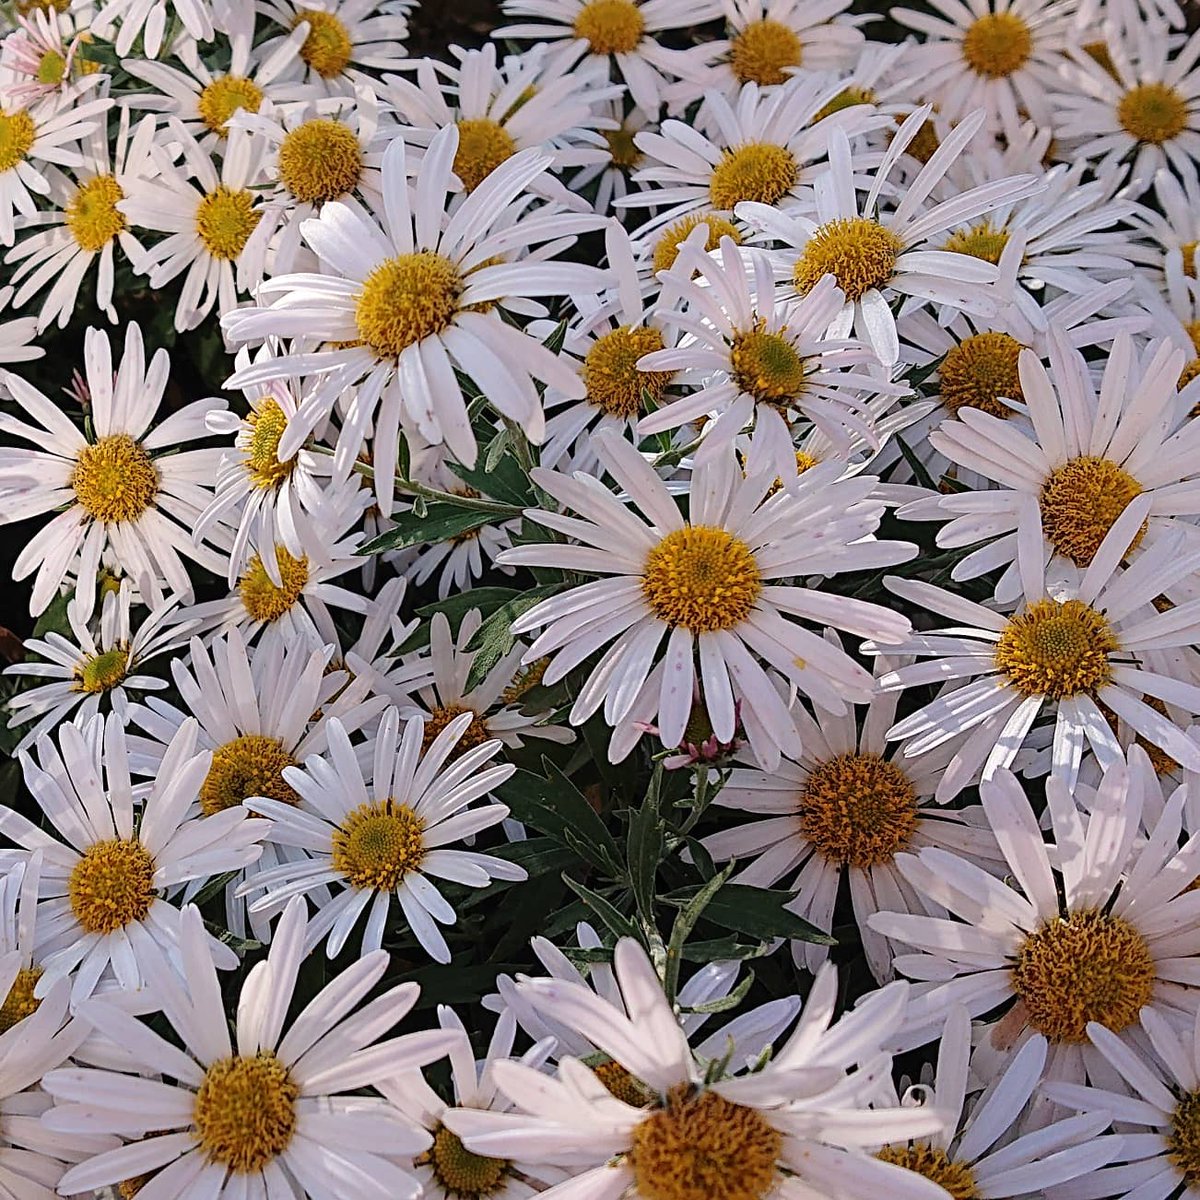 Garin インスタupしました 11月中旬に撮った マーガレットのような 白いキク 菊 キク 菊 白い花 庭の花 花壇の花 花の写真 花が好き Flower Flowers フラワー 花 T Co 9l94maszfc T Co J641rmoej2